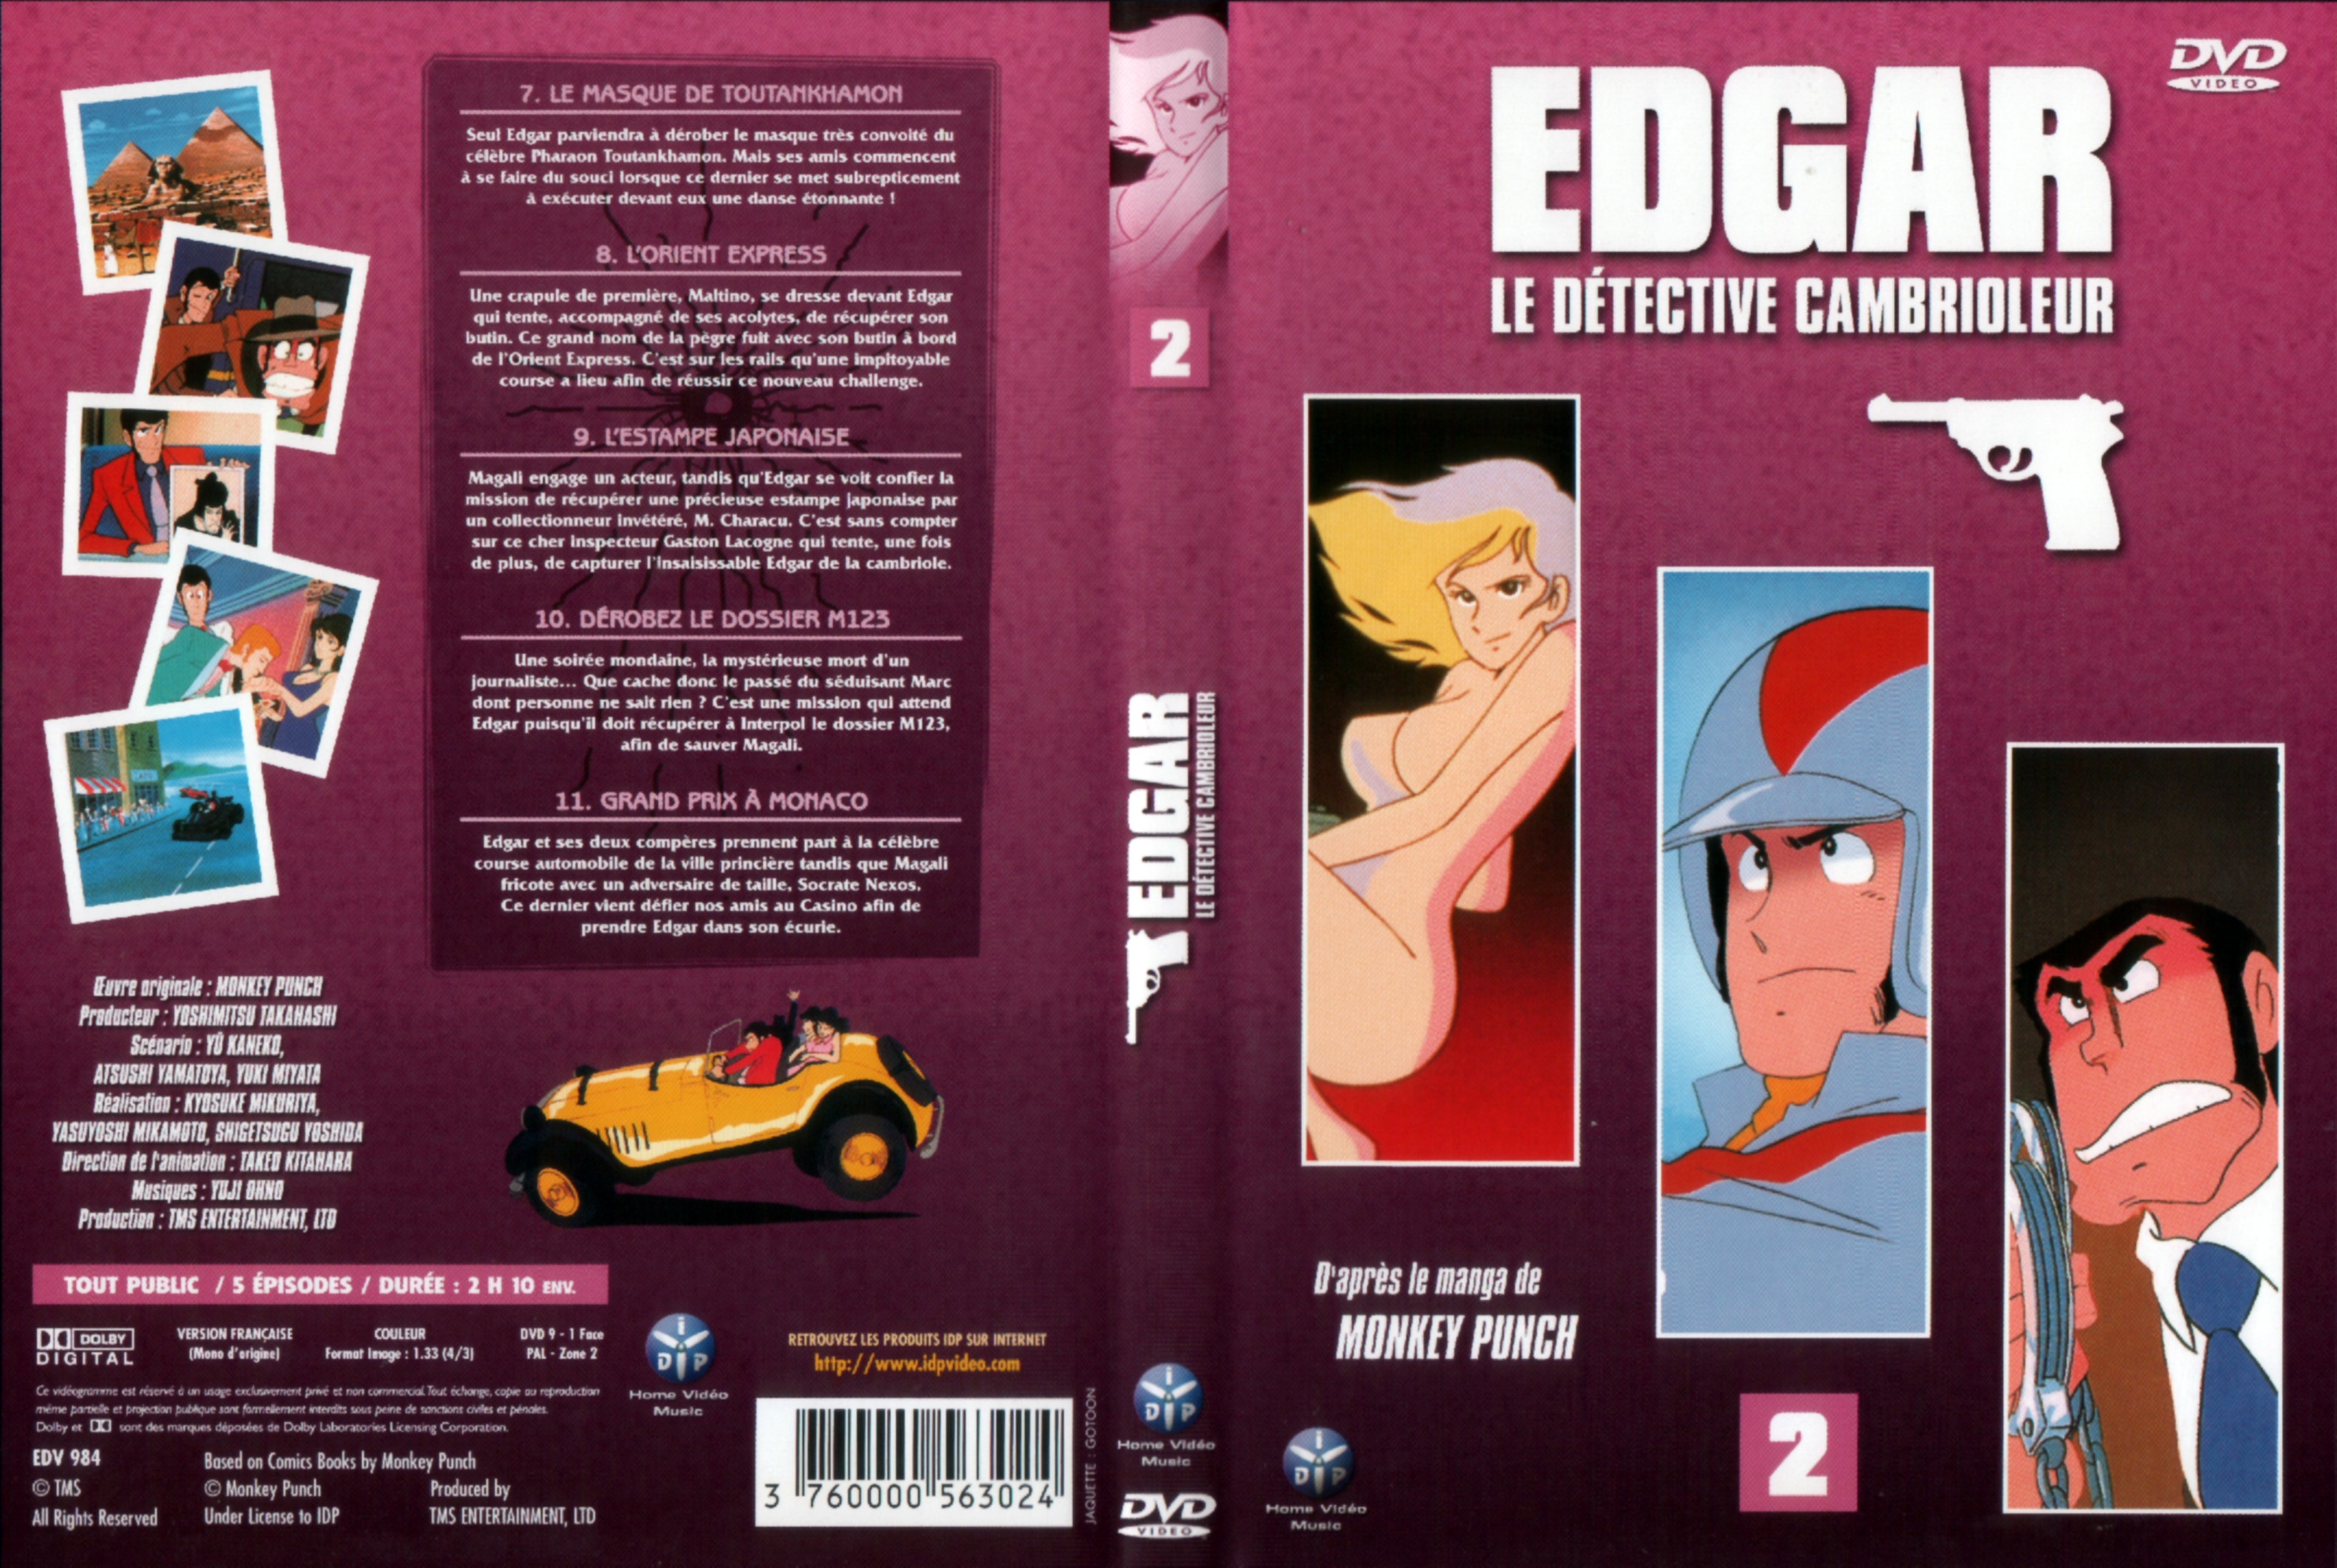 Jaquette DVD Edgar le detective cambrioleur DVD 02